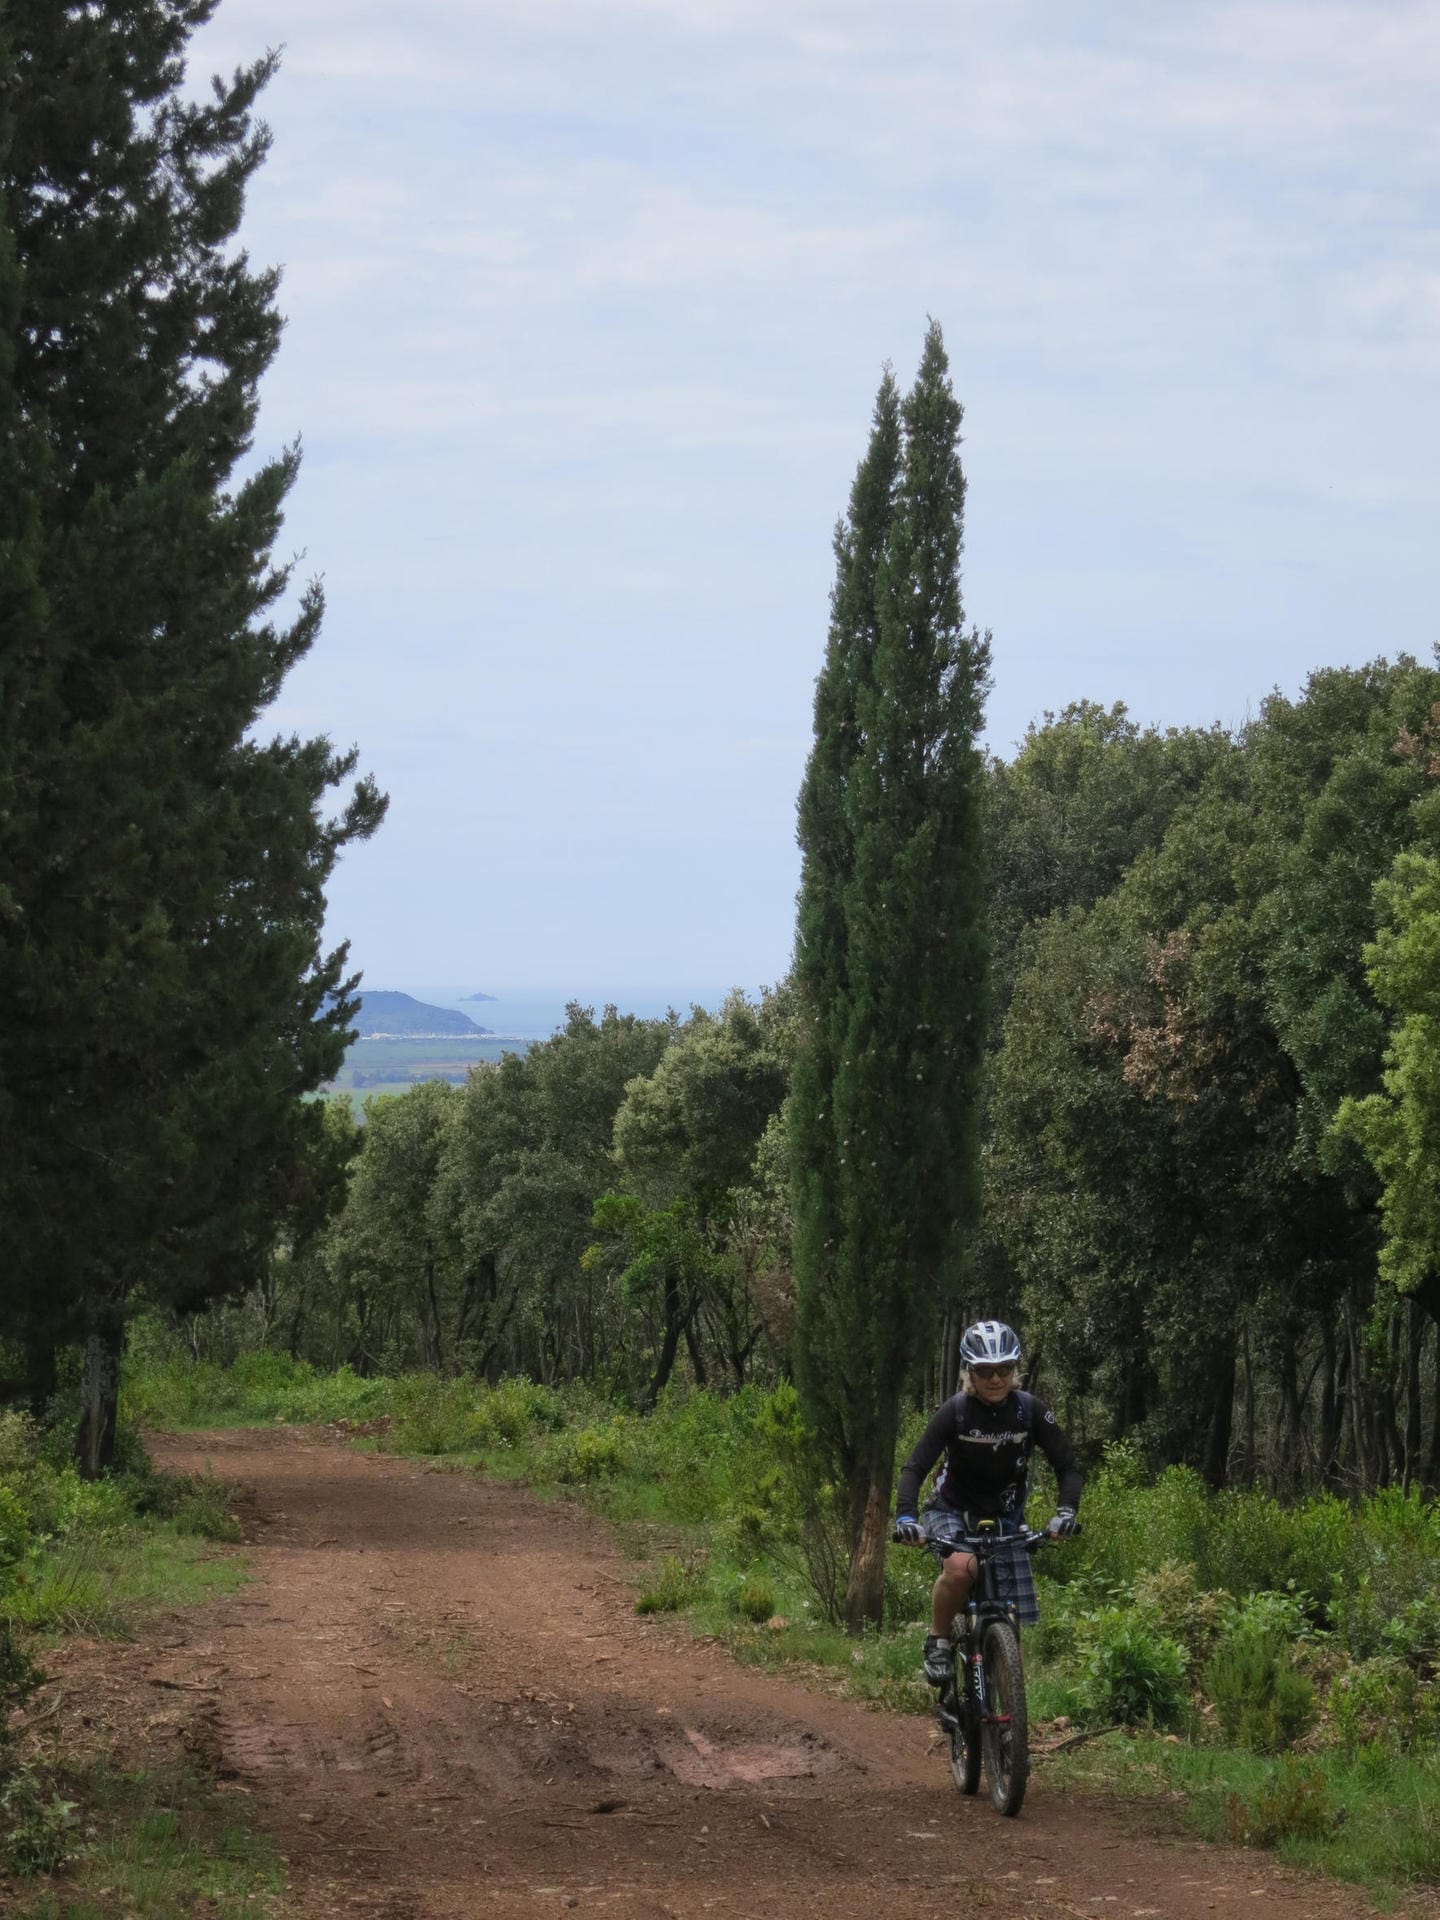 Zypress und sanfte Hügel prägen die Touren in der Toskana, wie hier in der Maremma.